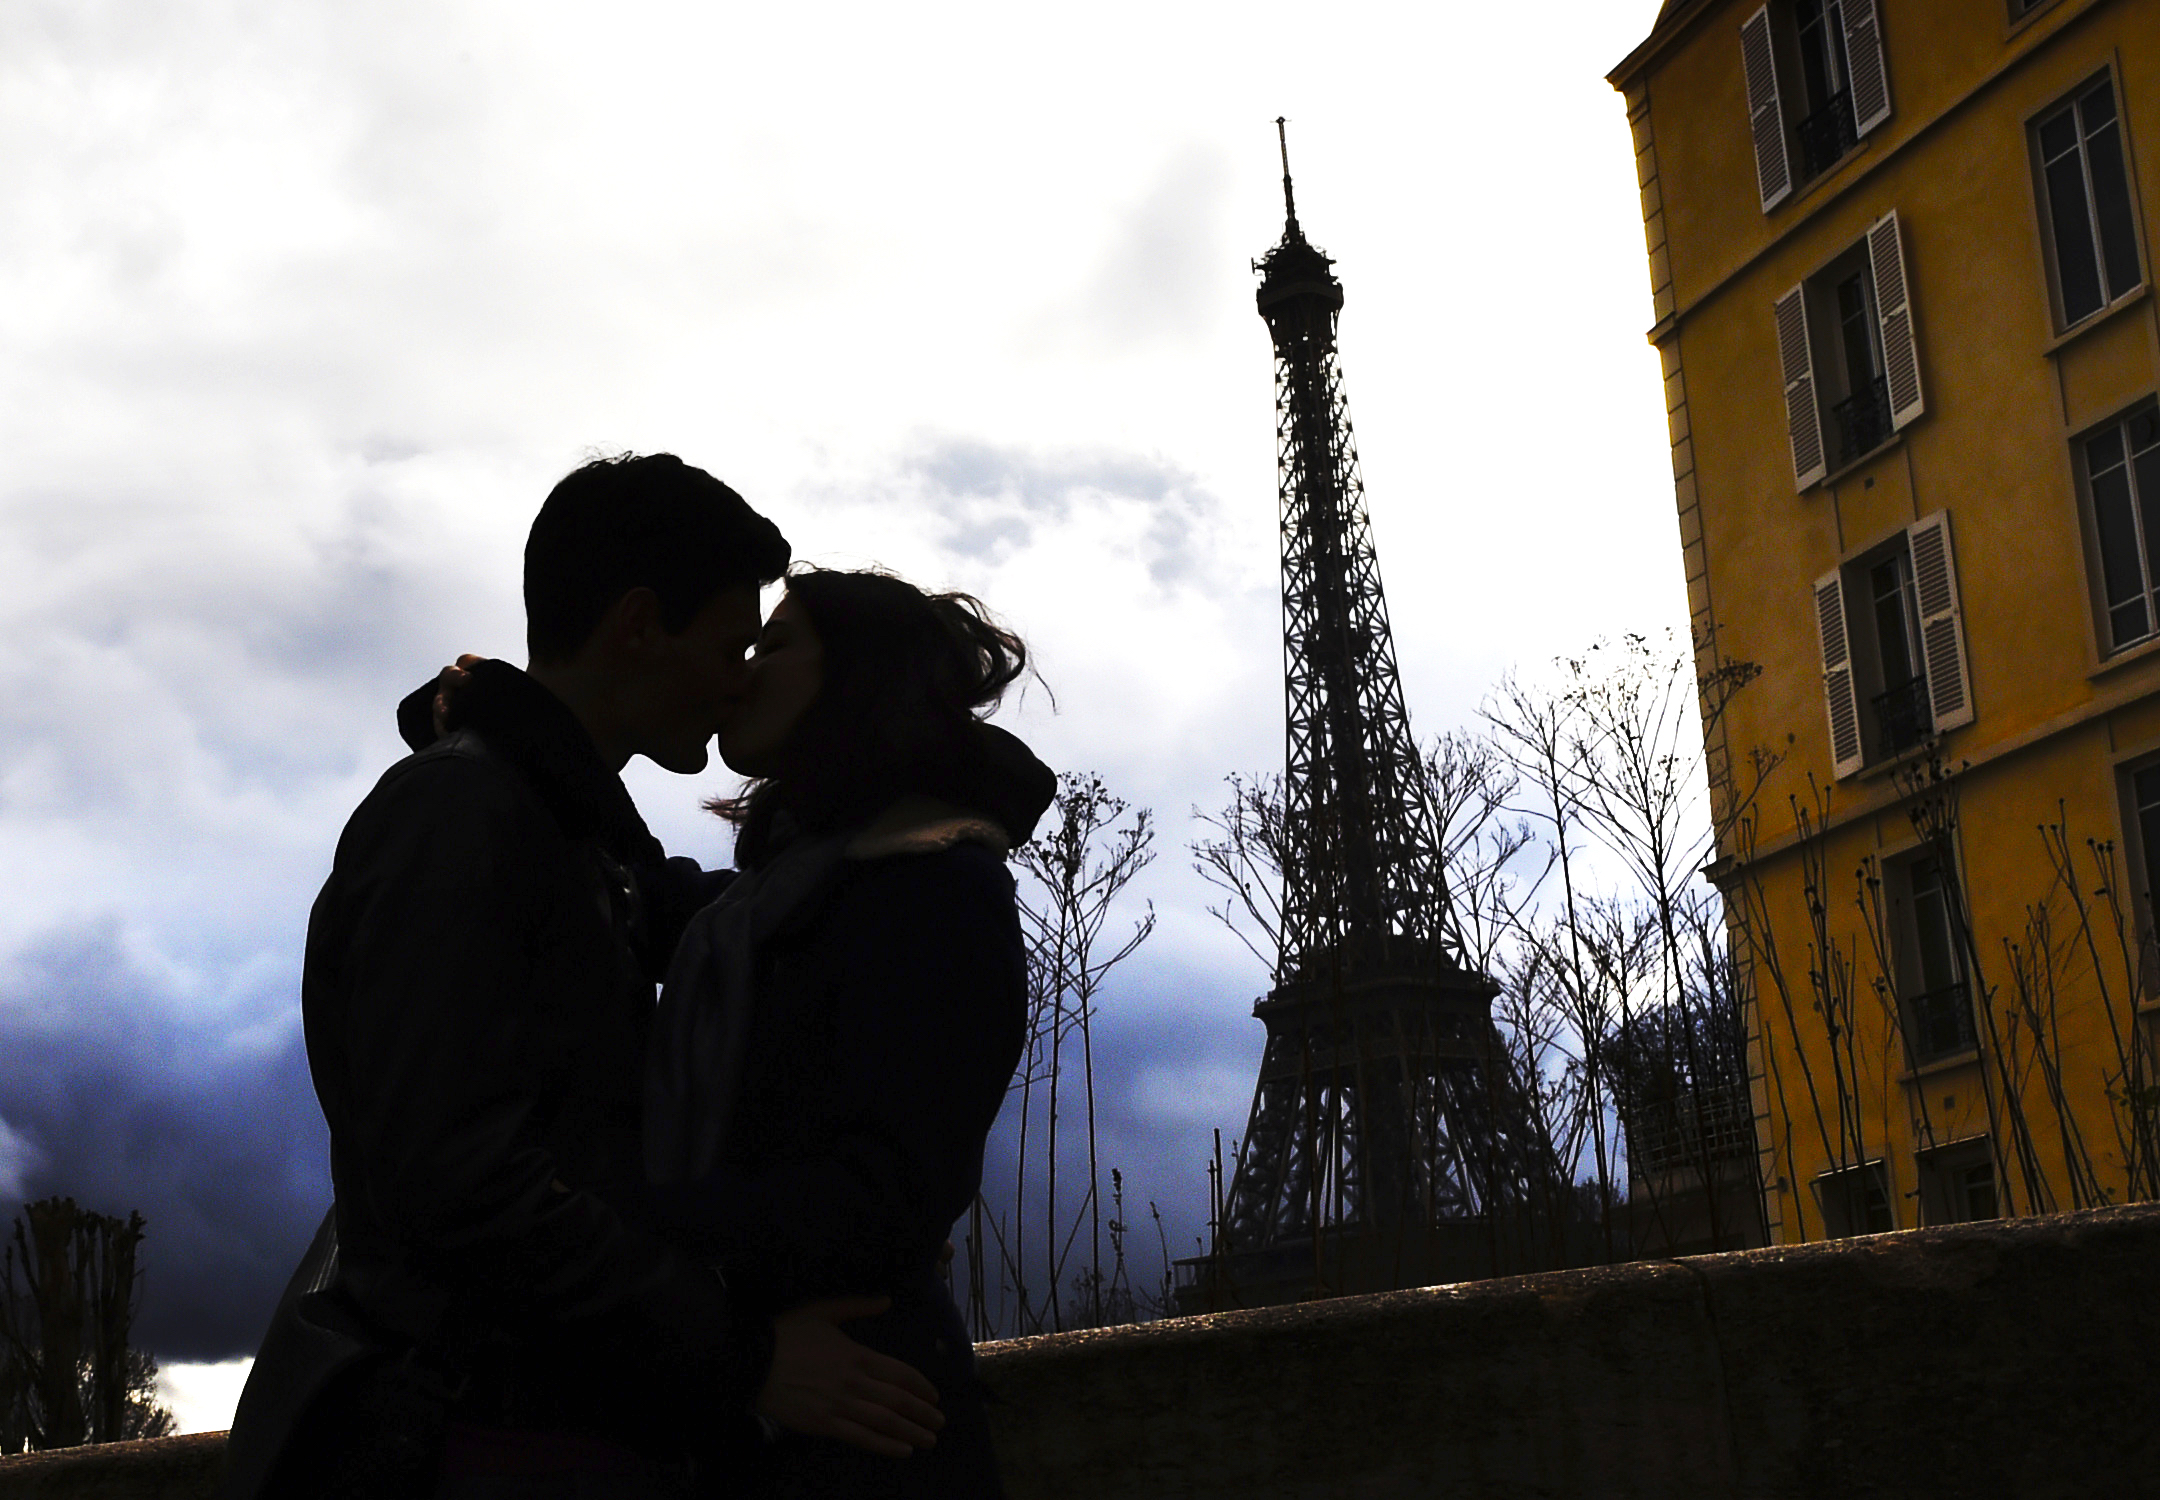 Влюбленная пара в Париже